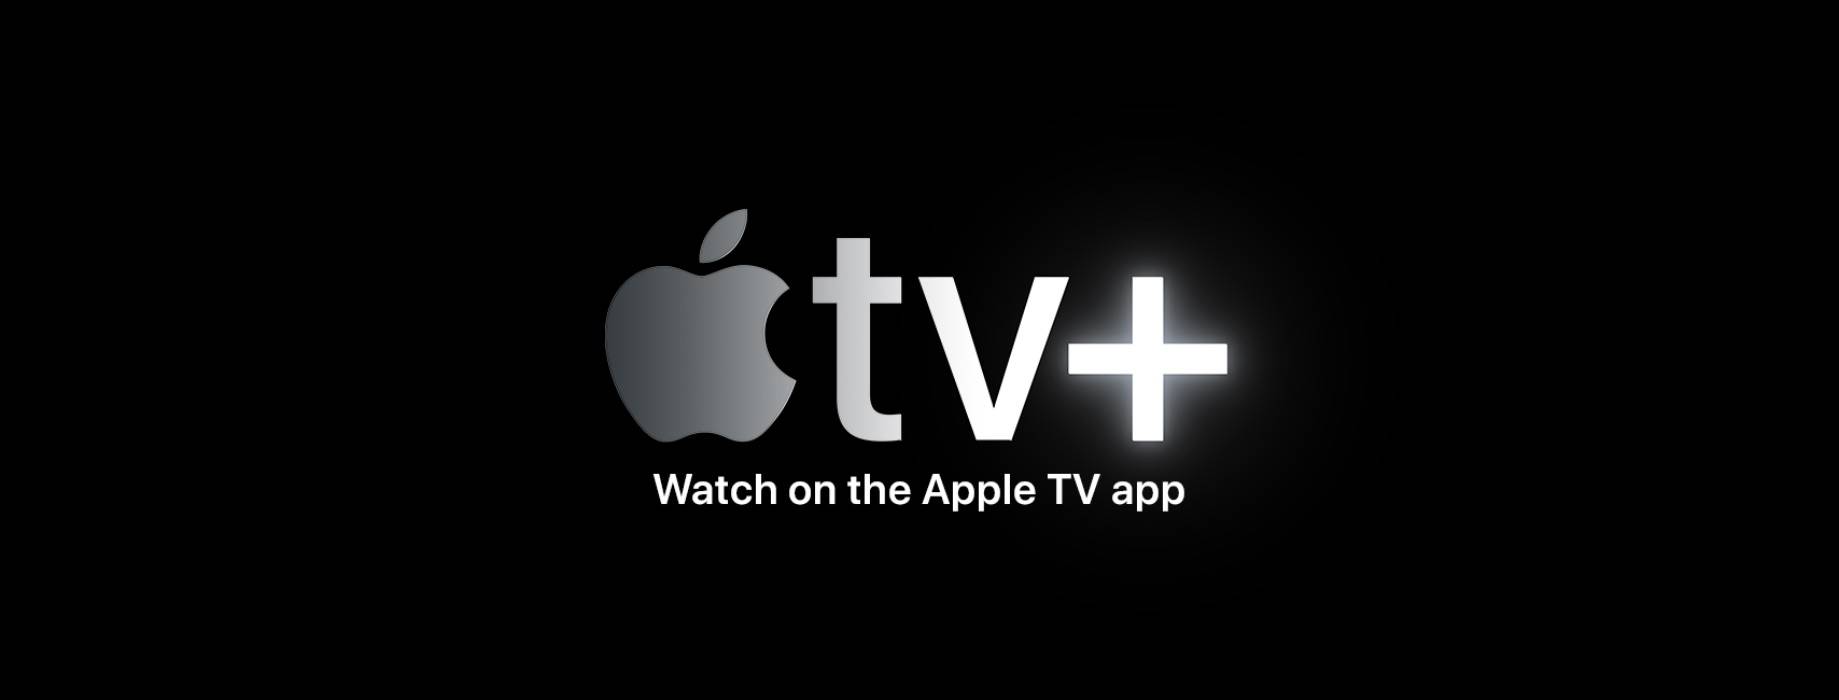 Apple TV+: tutte le info e i costi sulla nuova piattaforma streaming 